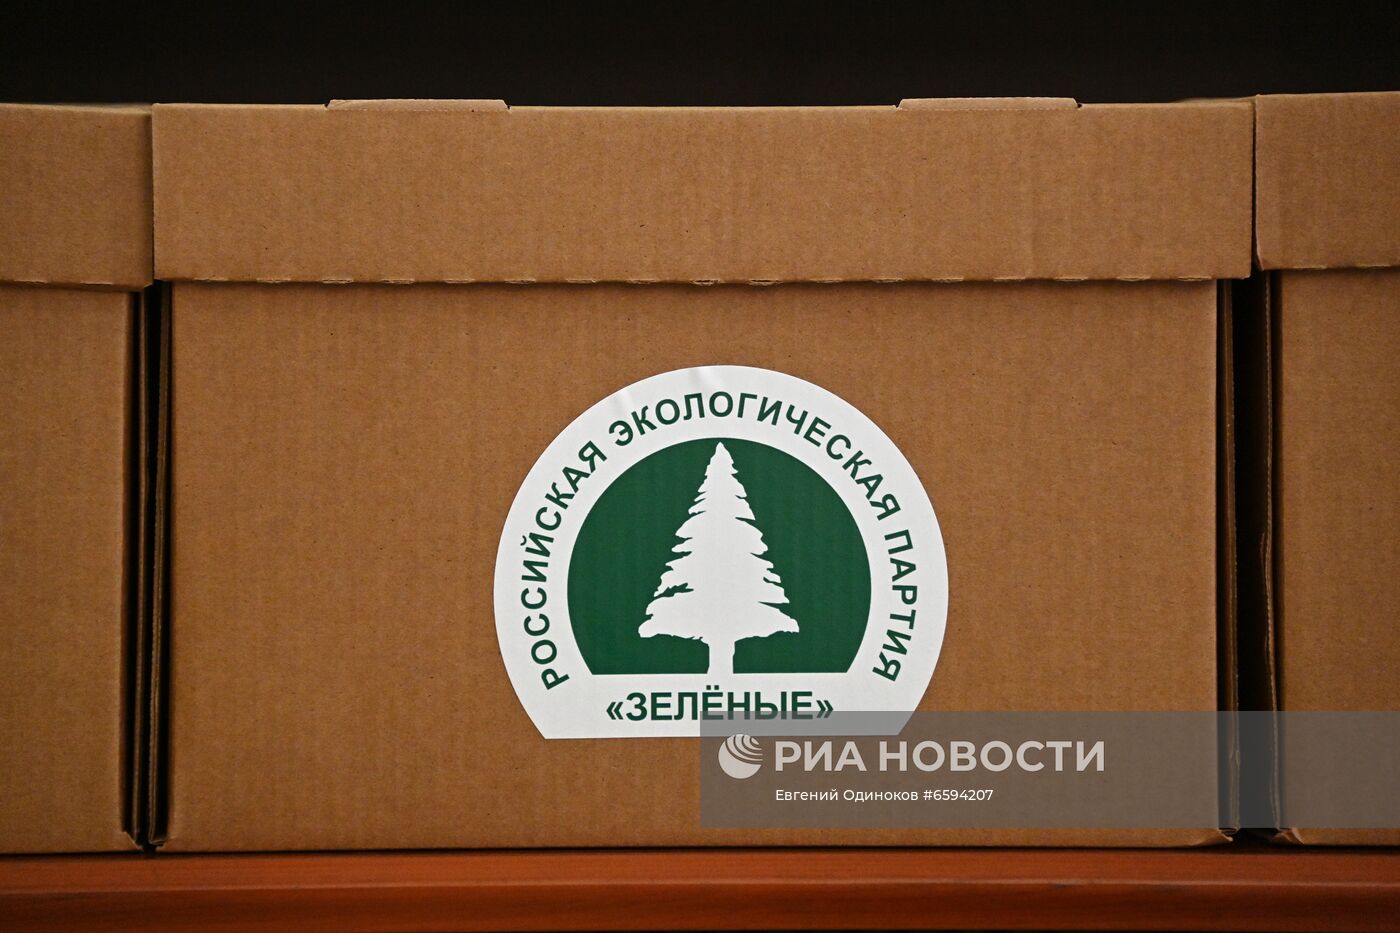 Подача документов партией "Зелёные" для регистрации кандидатов в депутаты Госдумы